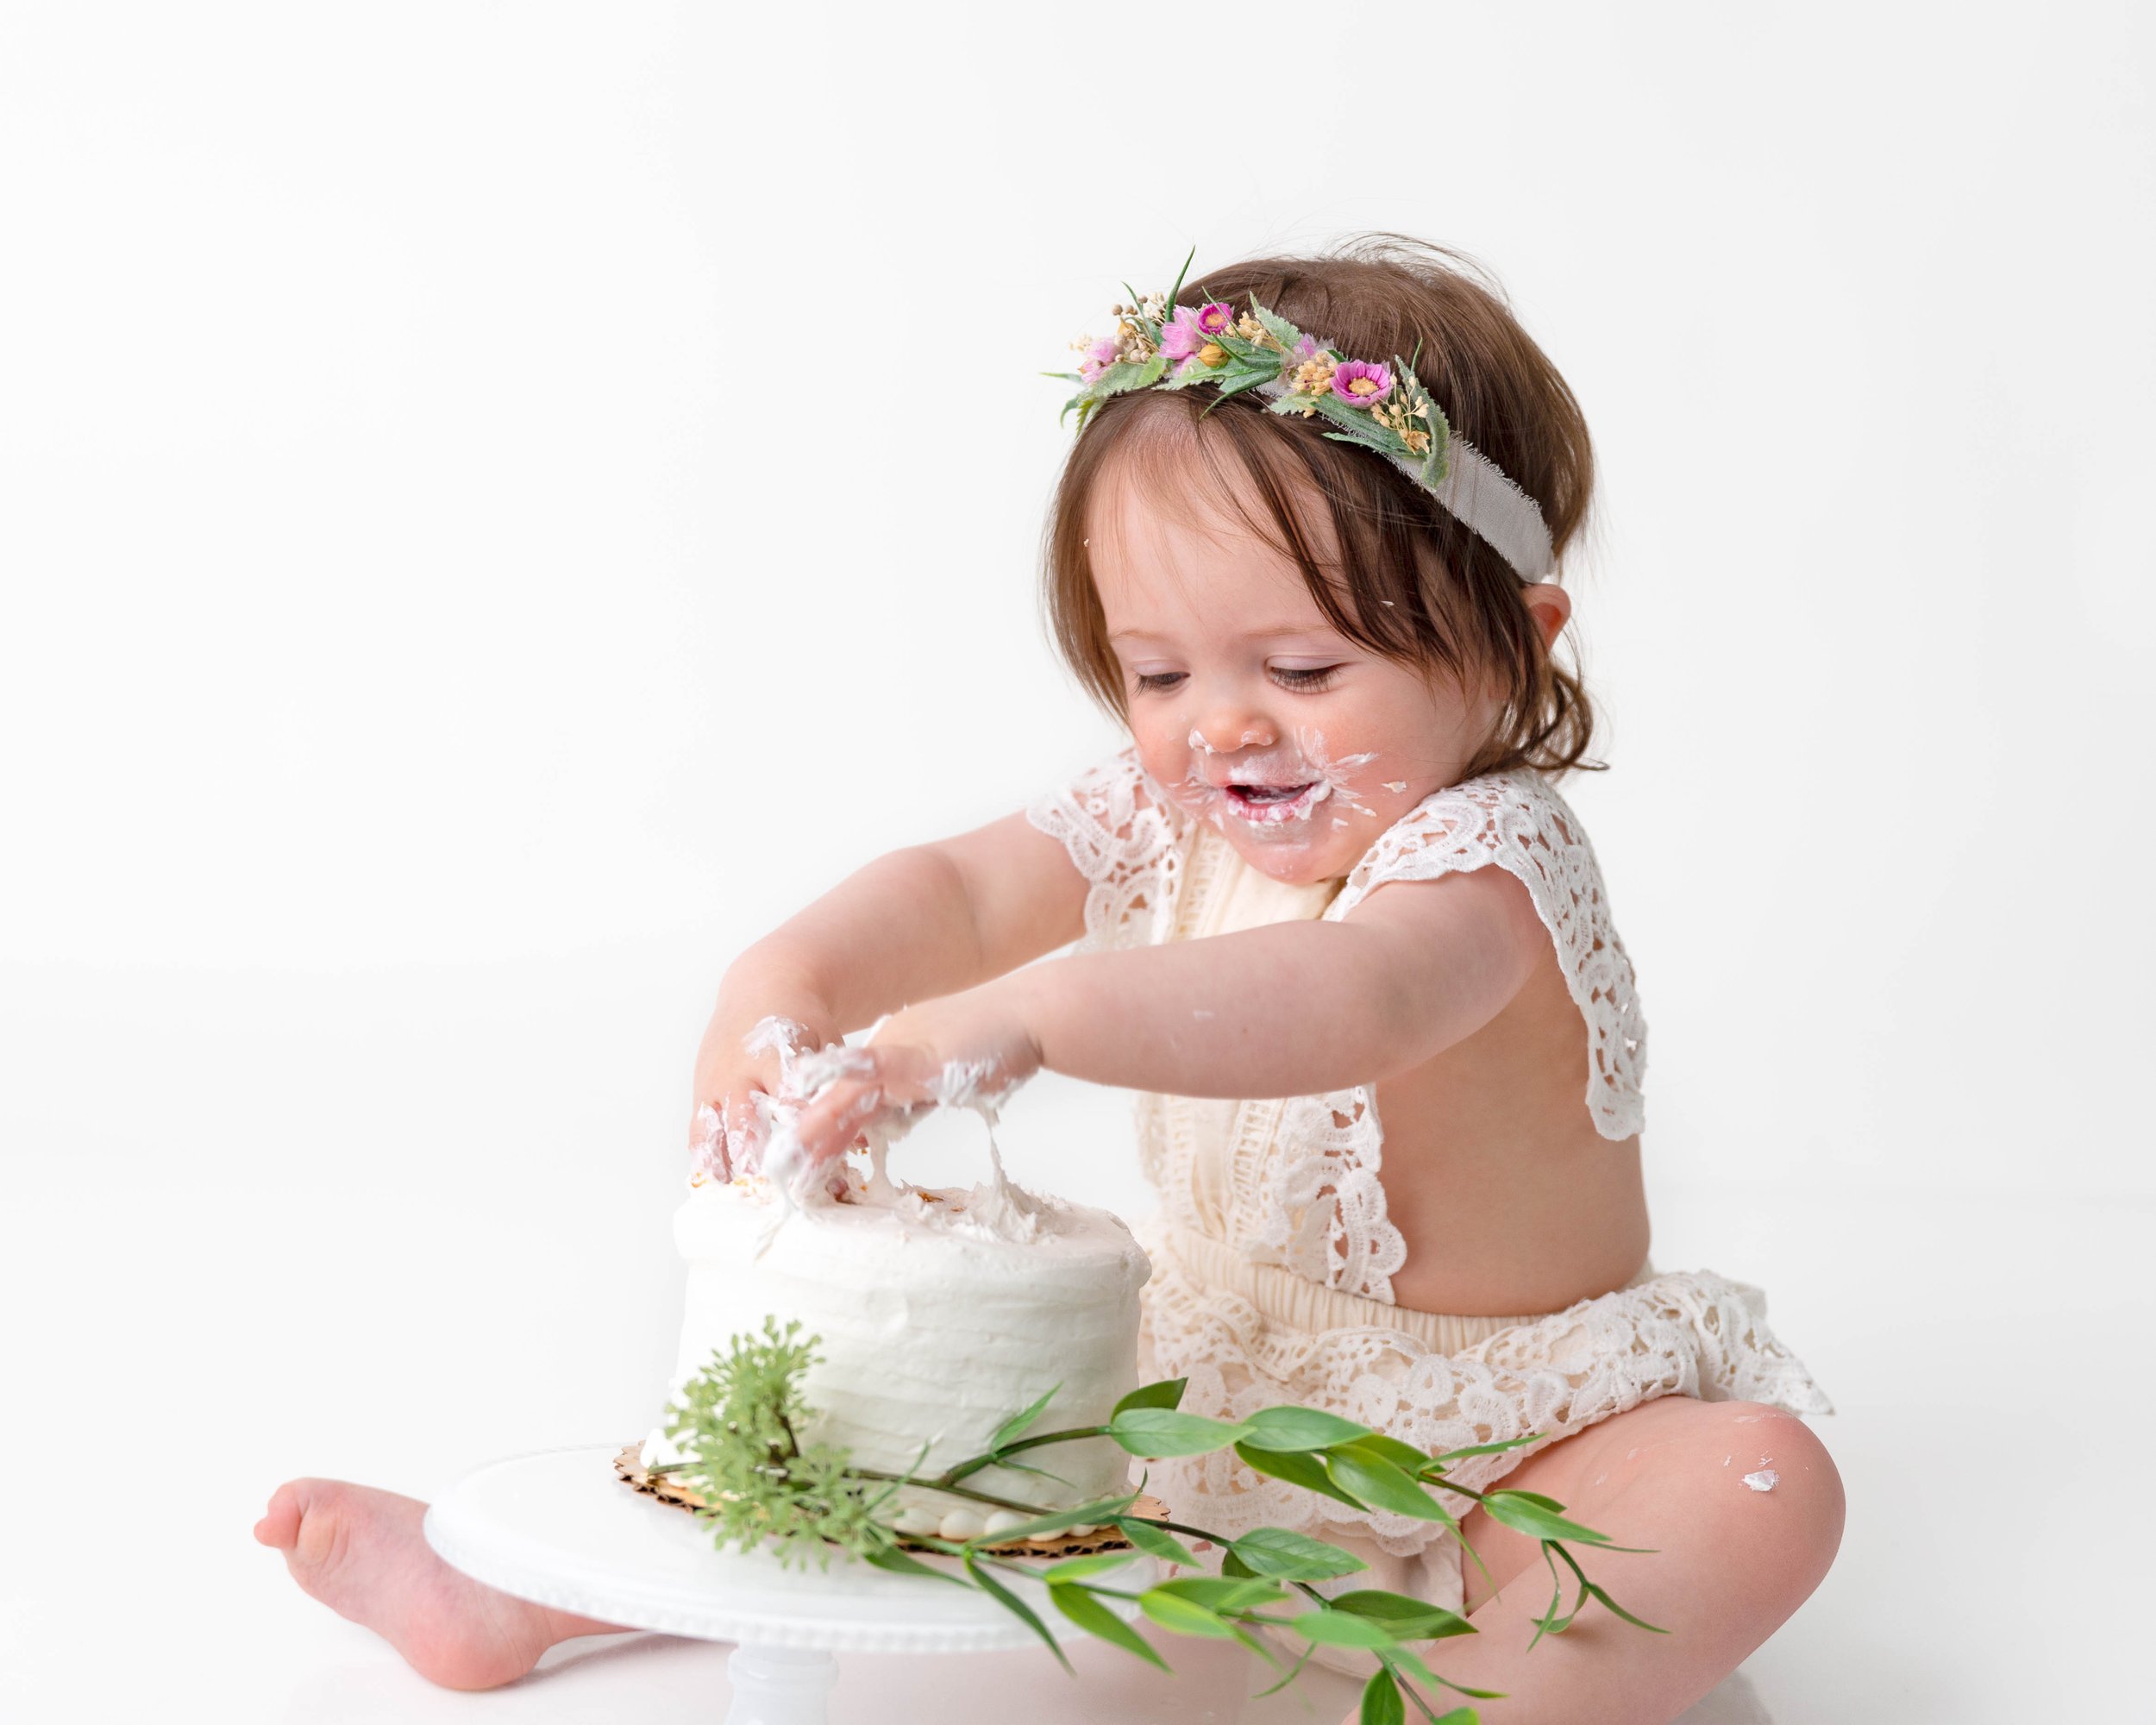 Cake-smash-one-year-old-photos-milestone-images-newborn-photography-baby-girl-spokane-washington-5.jpg